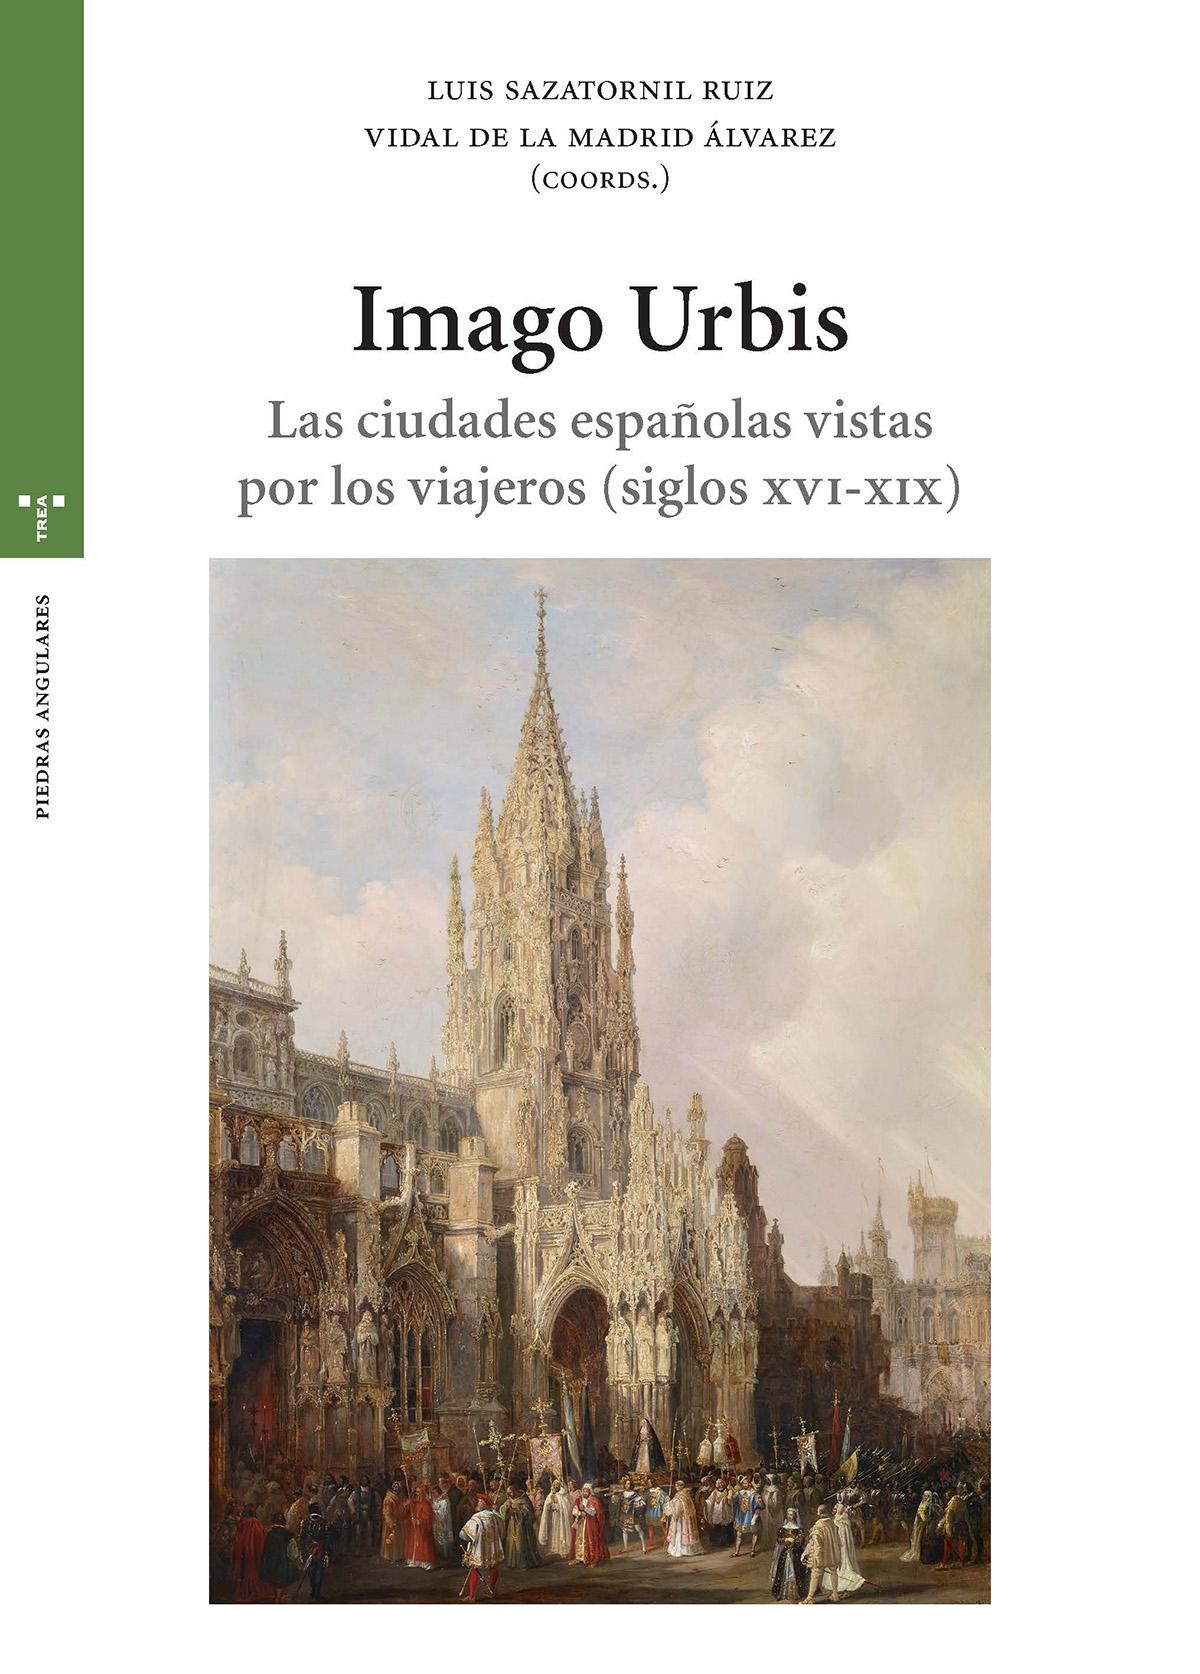 IMAGO URBIS "LAS CIUDADES ESPAÑOLAS VISTAS POR LOS VIAJEROS (SIGLOS XVI-XIX)". 